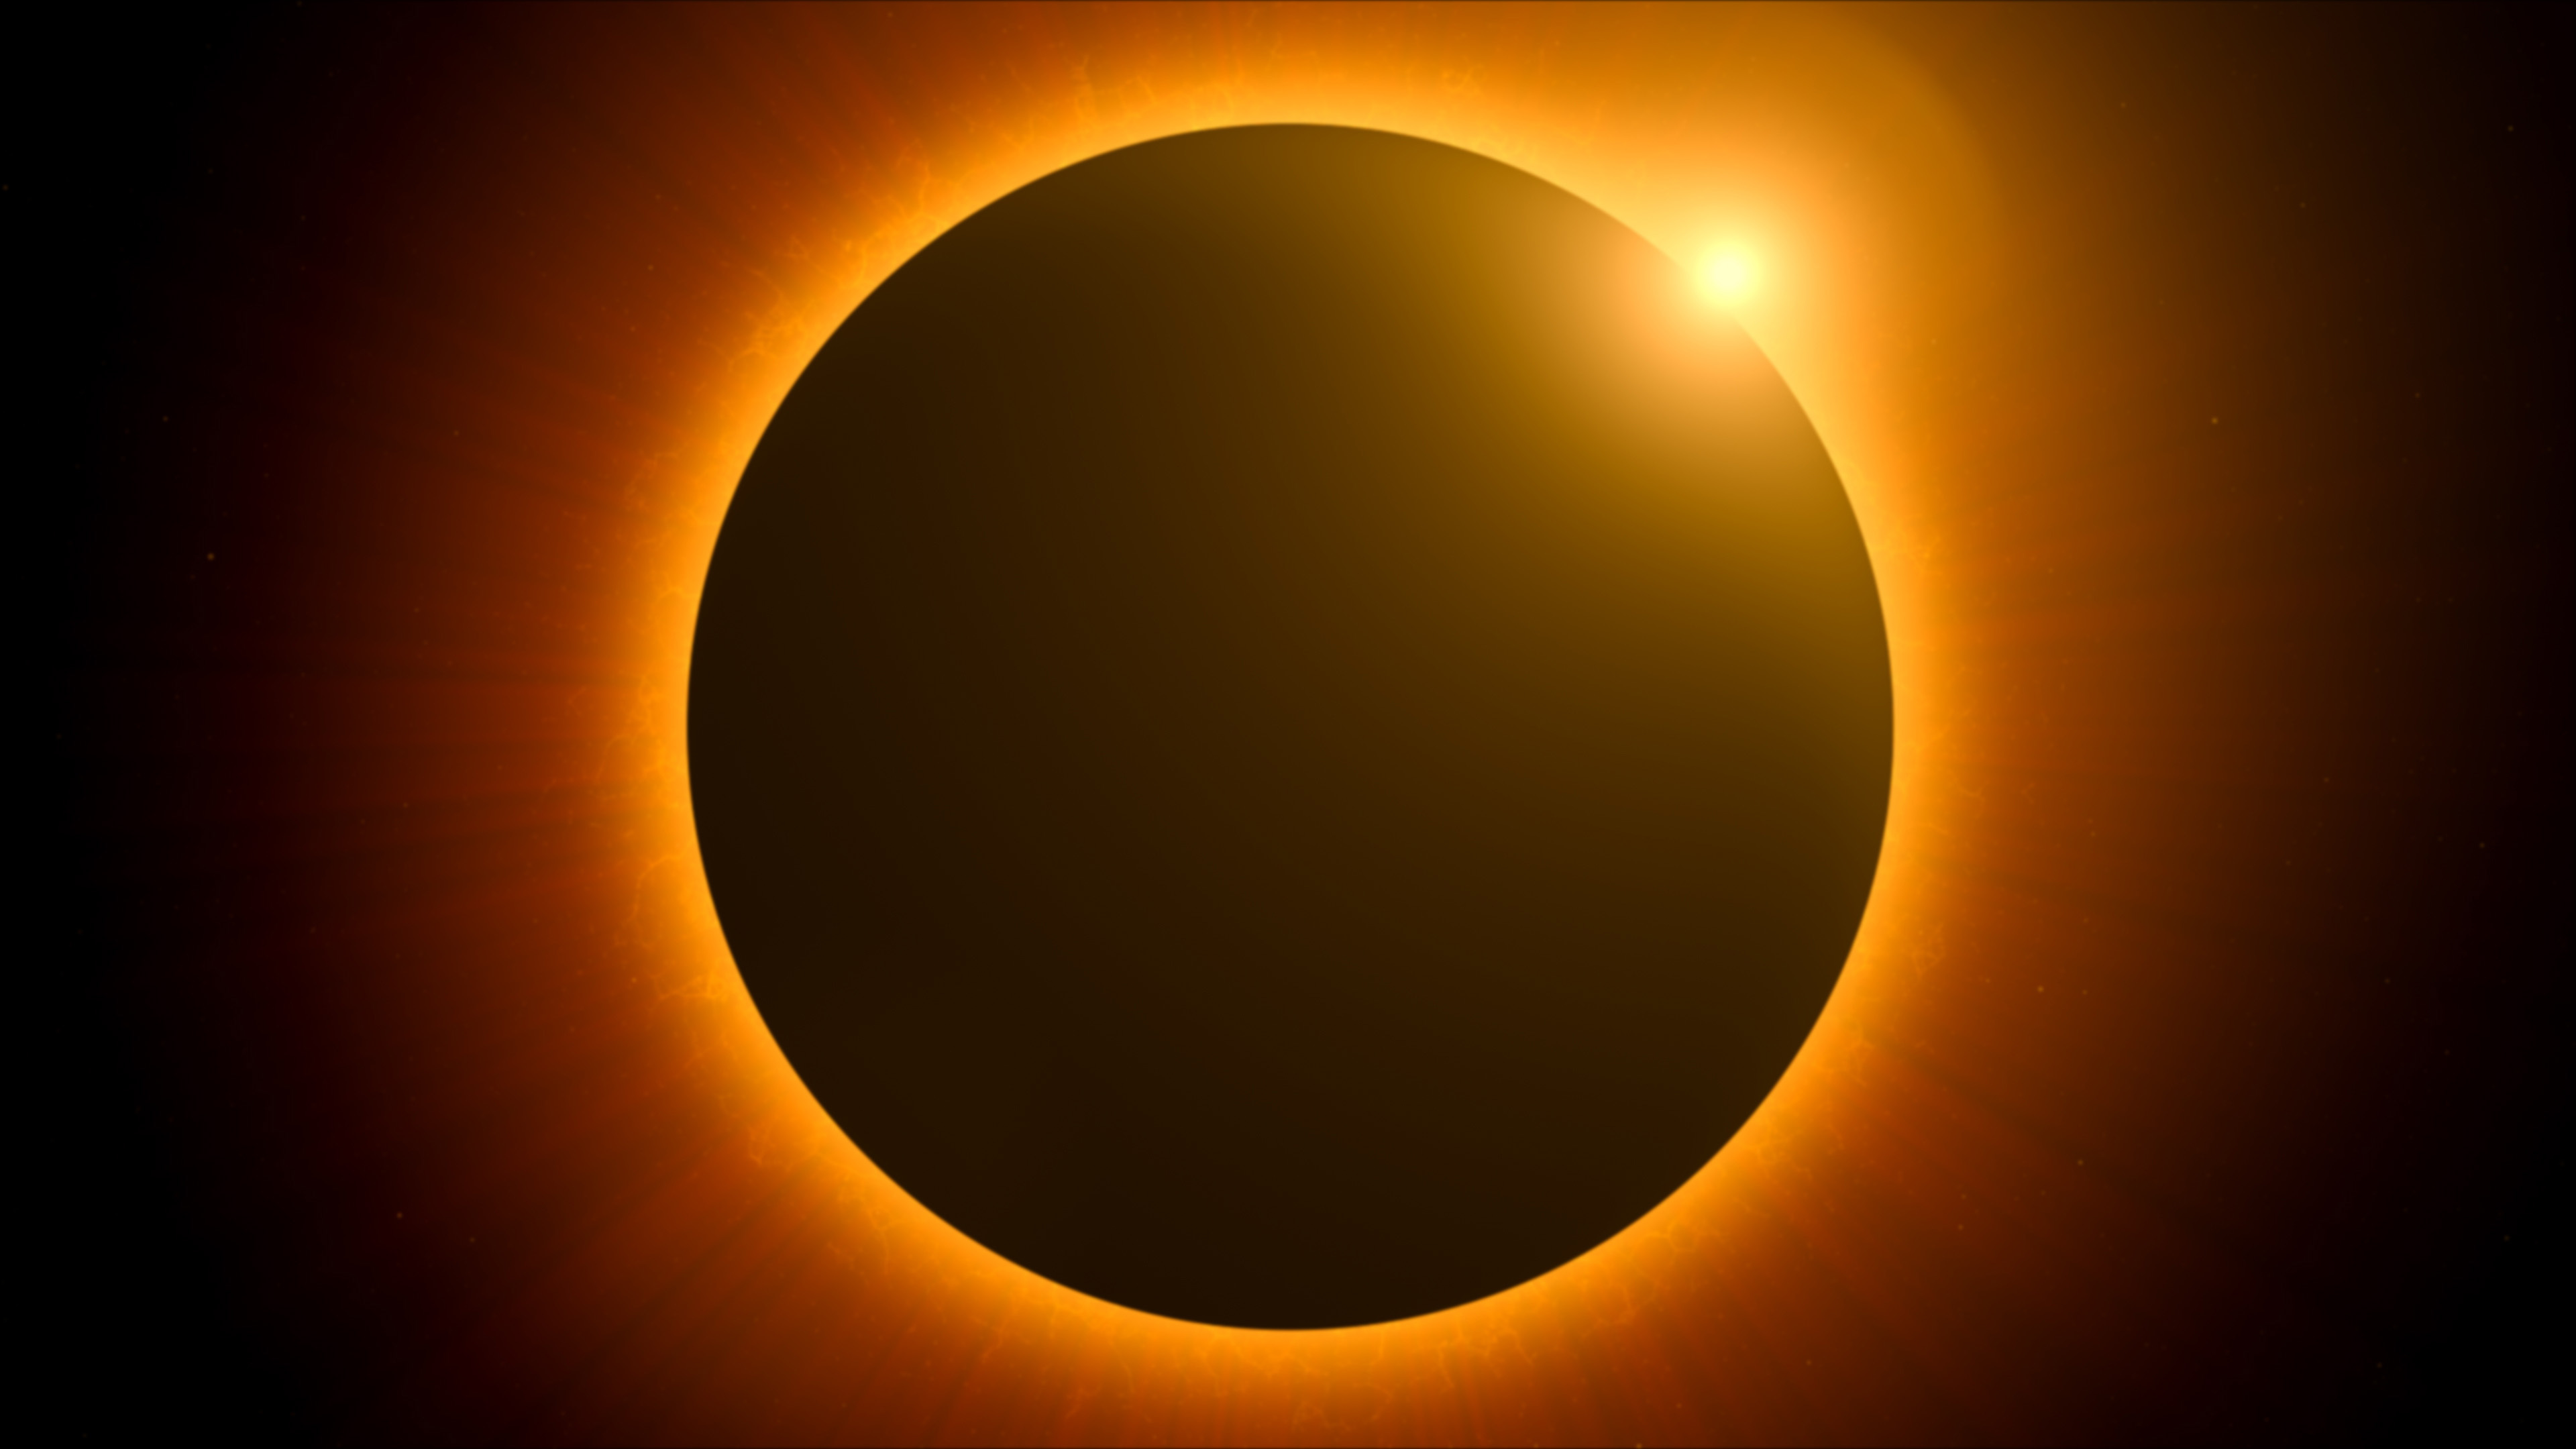 Acht schnelle Fakten über die bevorstehende große amerikanische Sonnenfinsternis am 8. April